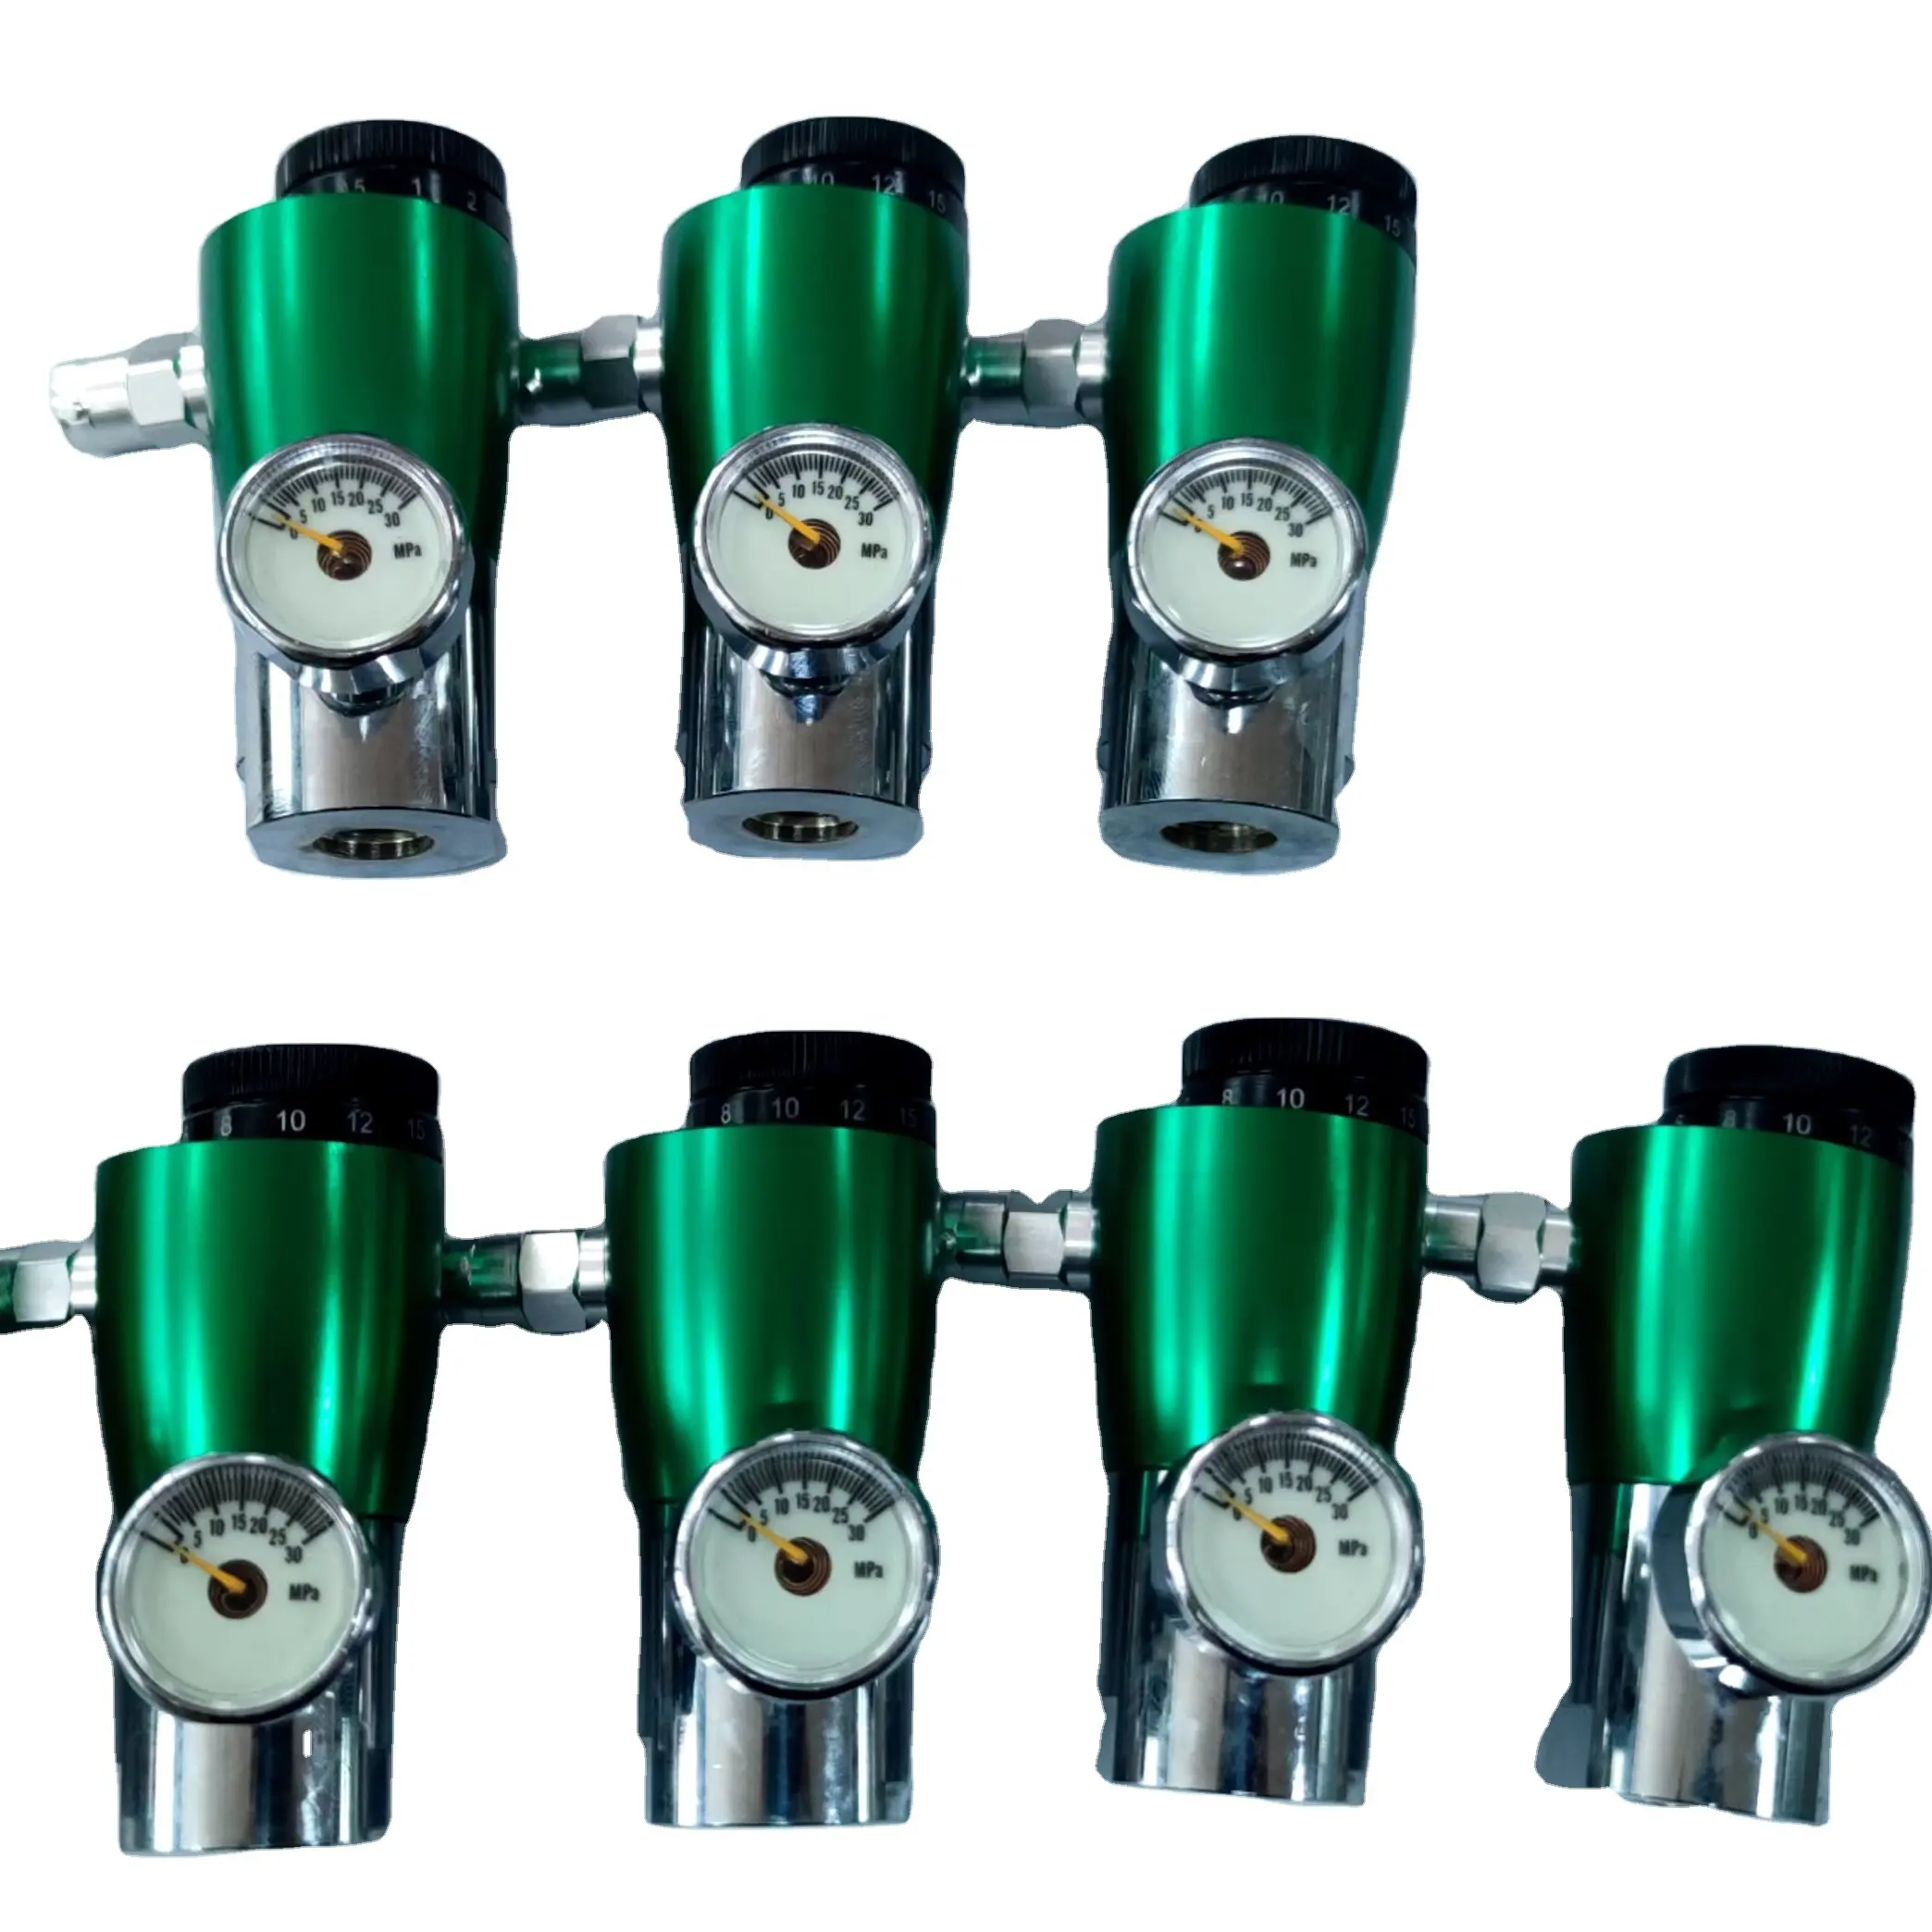 Medical oxygen cylinder valve click style oxygen regulator valve for gas cylinder